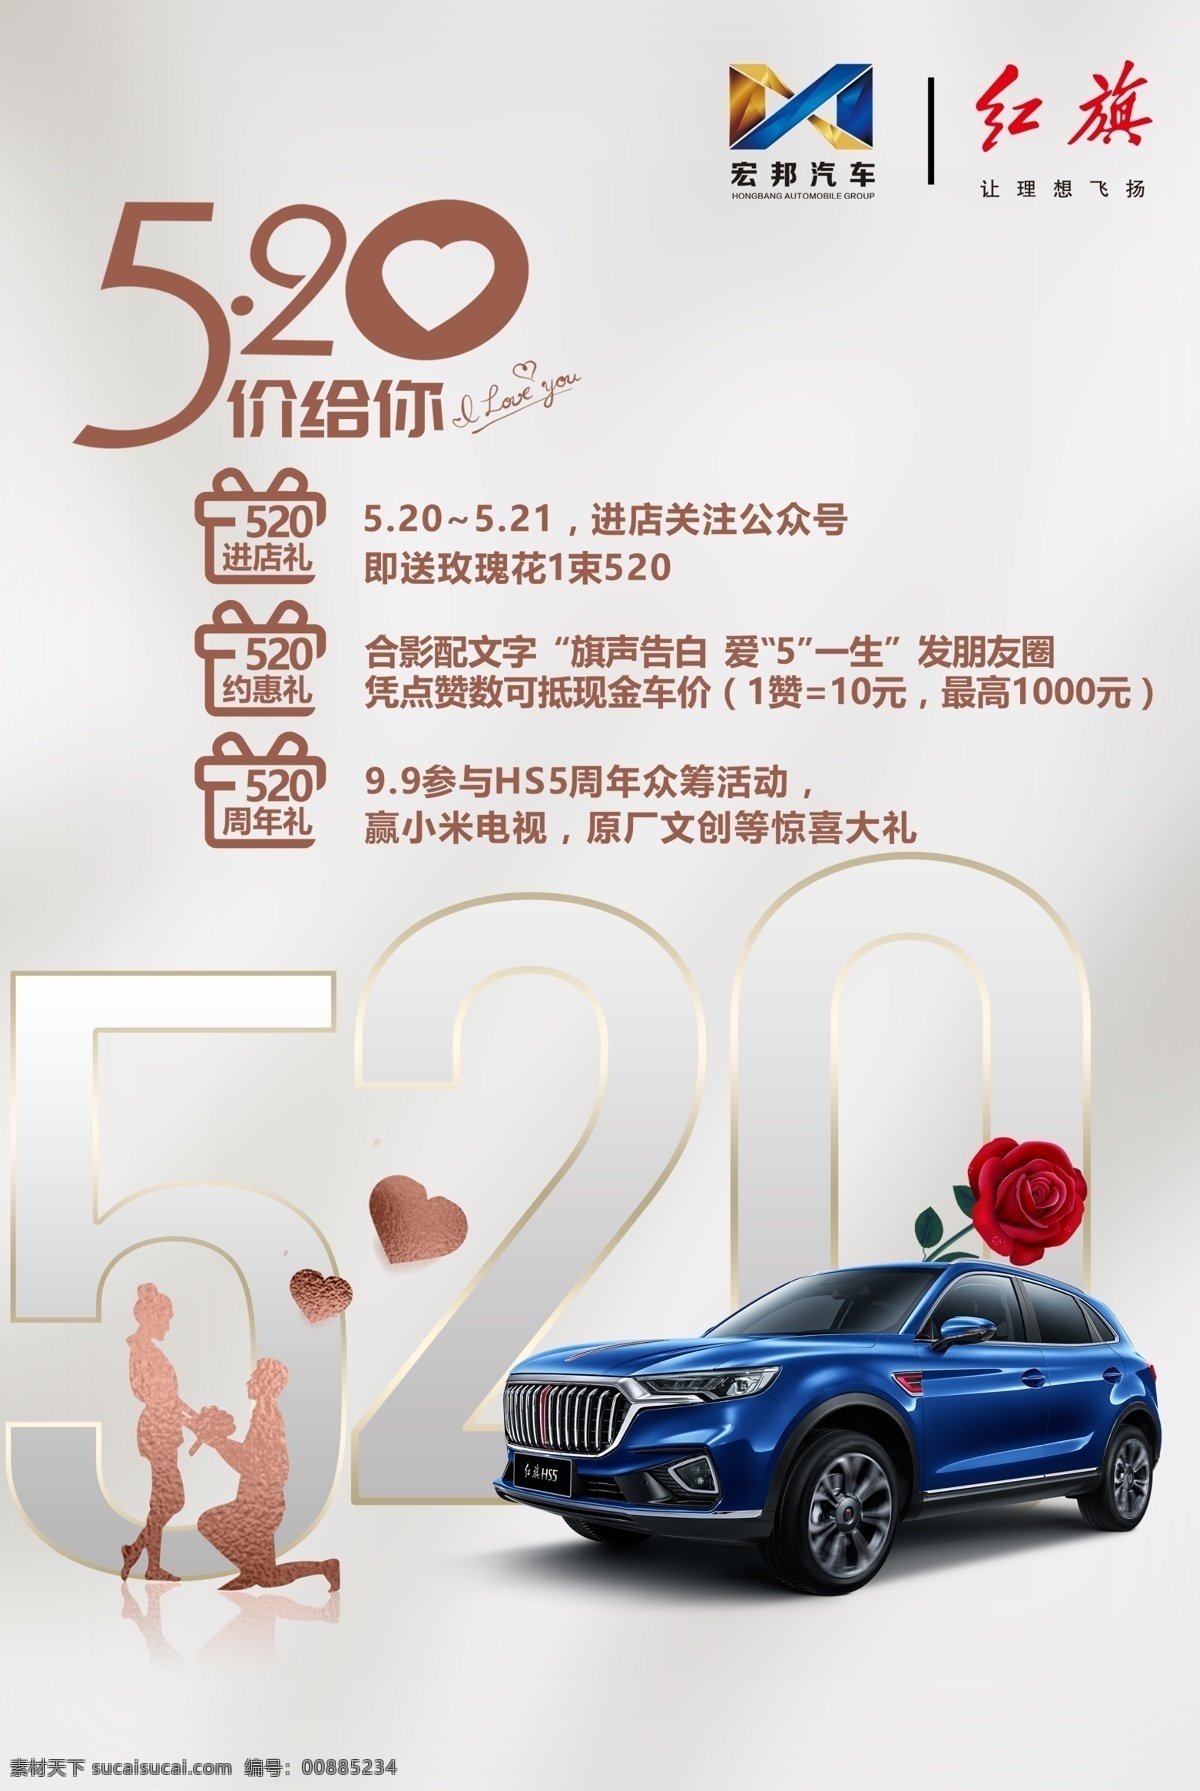 520 红旗 汽车 促销活动 情人节 红旗汽车 促销 hs5 商务 简约 海报 室内广告设计